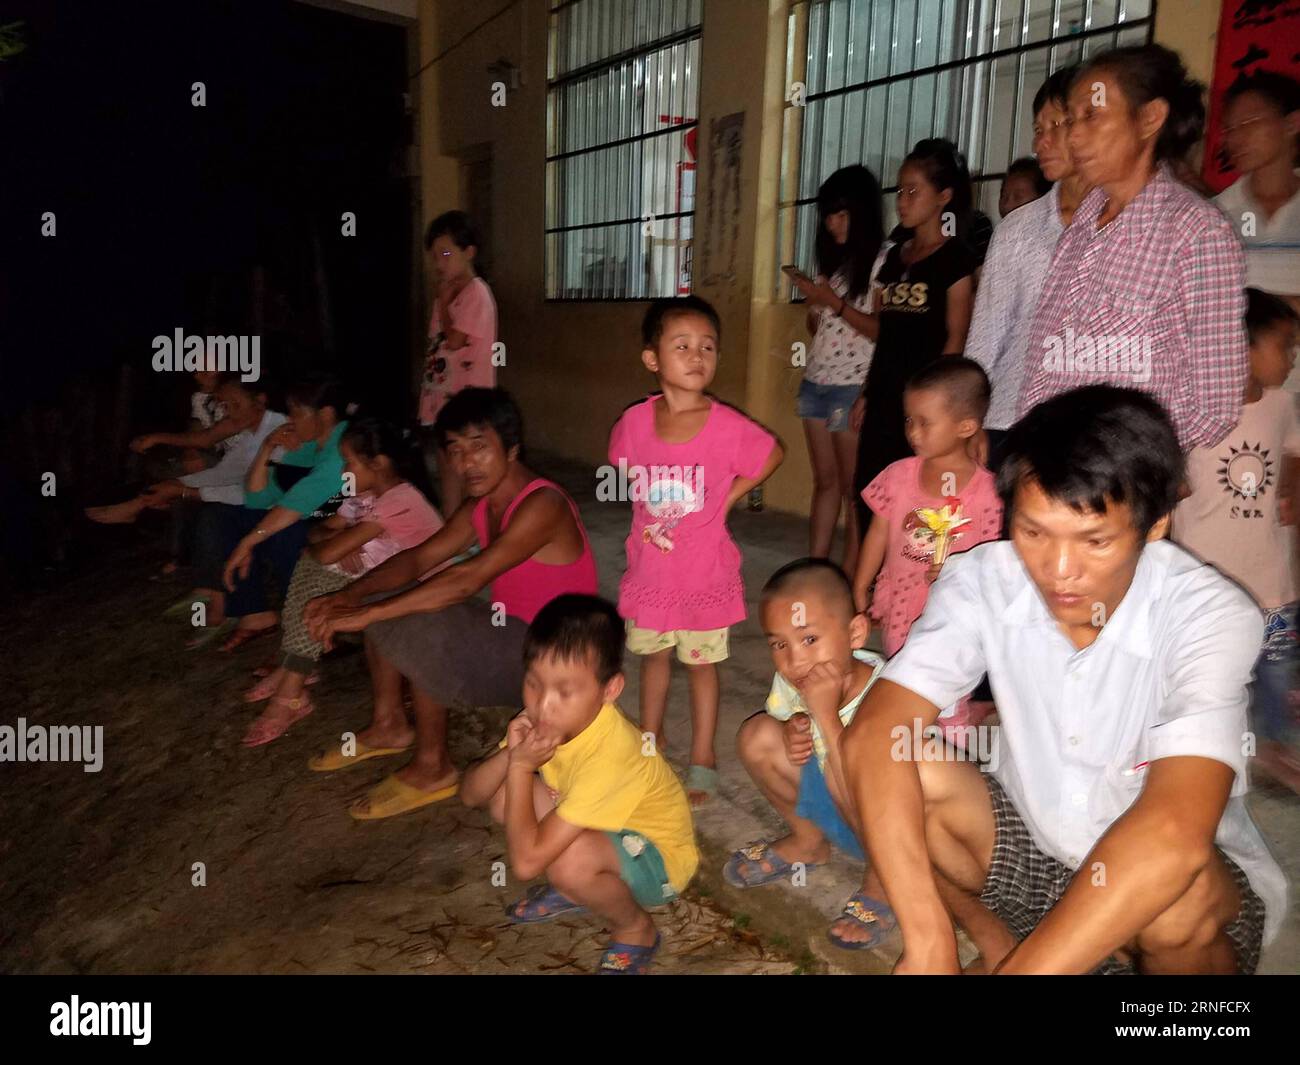 (160801) -- CANGWU, 1. August 2016 -- Foto aufgenommen mit einem Handy am 31. Juli 2016 zeigt Bewohner, die nach einem Erdbeben in der Gemeinde Shatou im Cangwu County, der südchinesischen autonomen Region Guangxi Zhuang, in einem provisorischen Unterschlupf untergebracht sind. Ein Erdbeben von etwa 5,4 auf der Richter-Skala traf am Sonntag um 17:18 Uhr das Cangwu County der Stadt Wuzhou in Guangx. Das Epizentrum wurde nach Angaben des China Earthquake Networks Center (CENC) bei 24,08 Grad nördlicher Breite und 111,56 Grad östlicher Länge mit einer Tiefe von 10 Kilometern überwacht. Es wurden keine Todesfälle gemeldet. ) (LFJ) CHINA-GUANGXI-EART Stockfoto